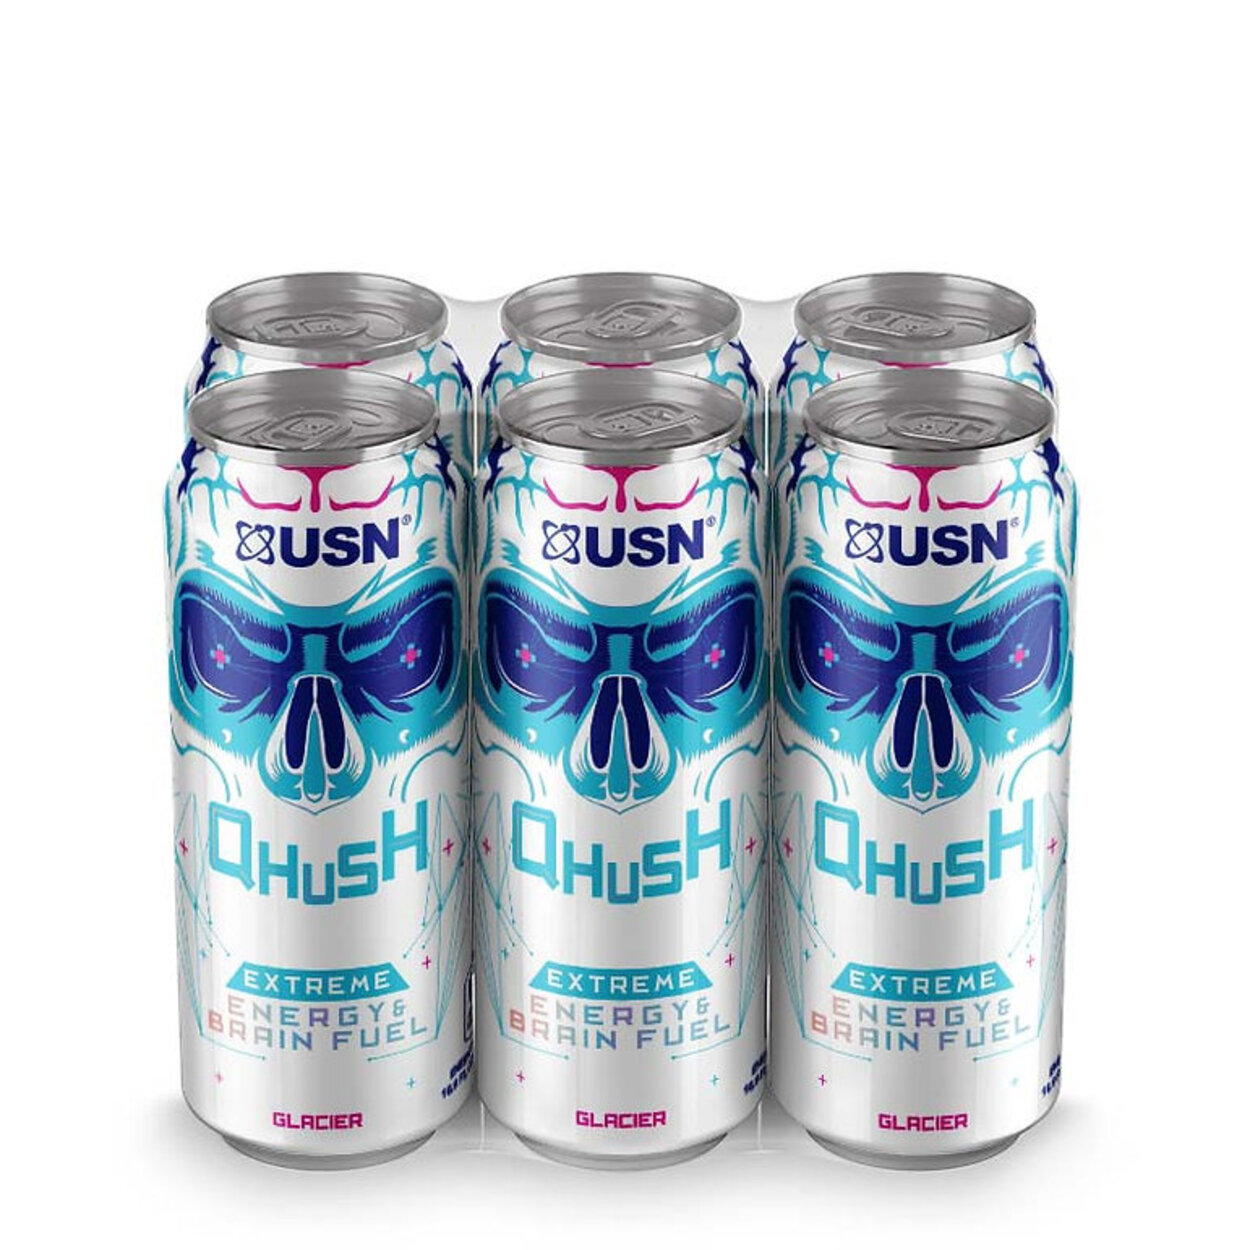 Qhush energy drink glacier flavor.